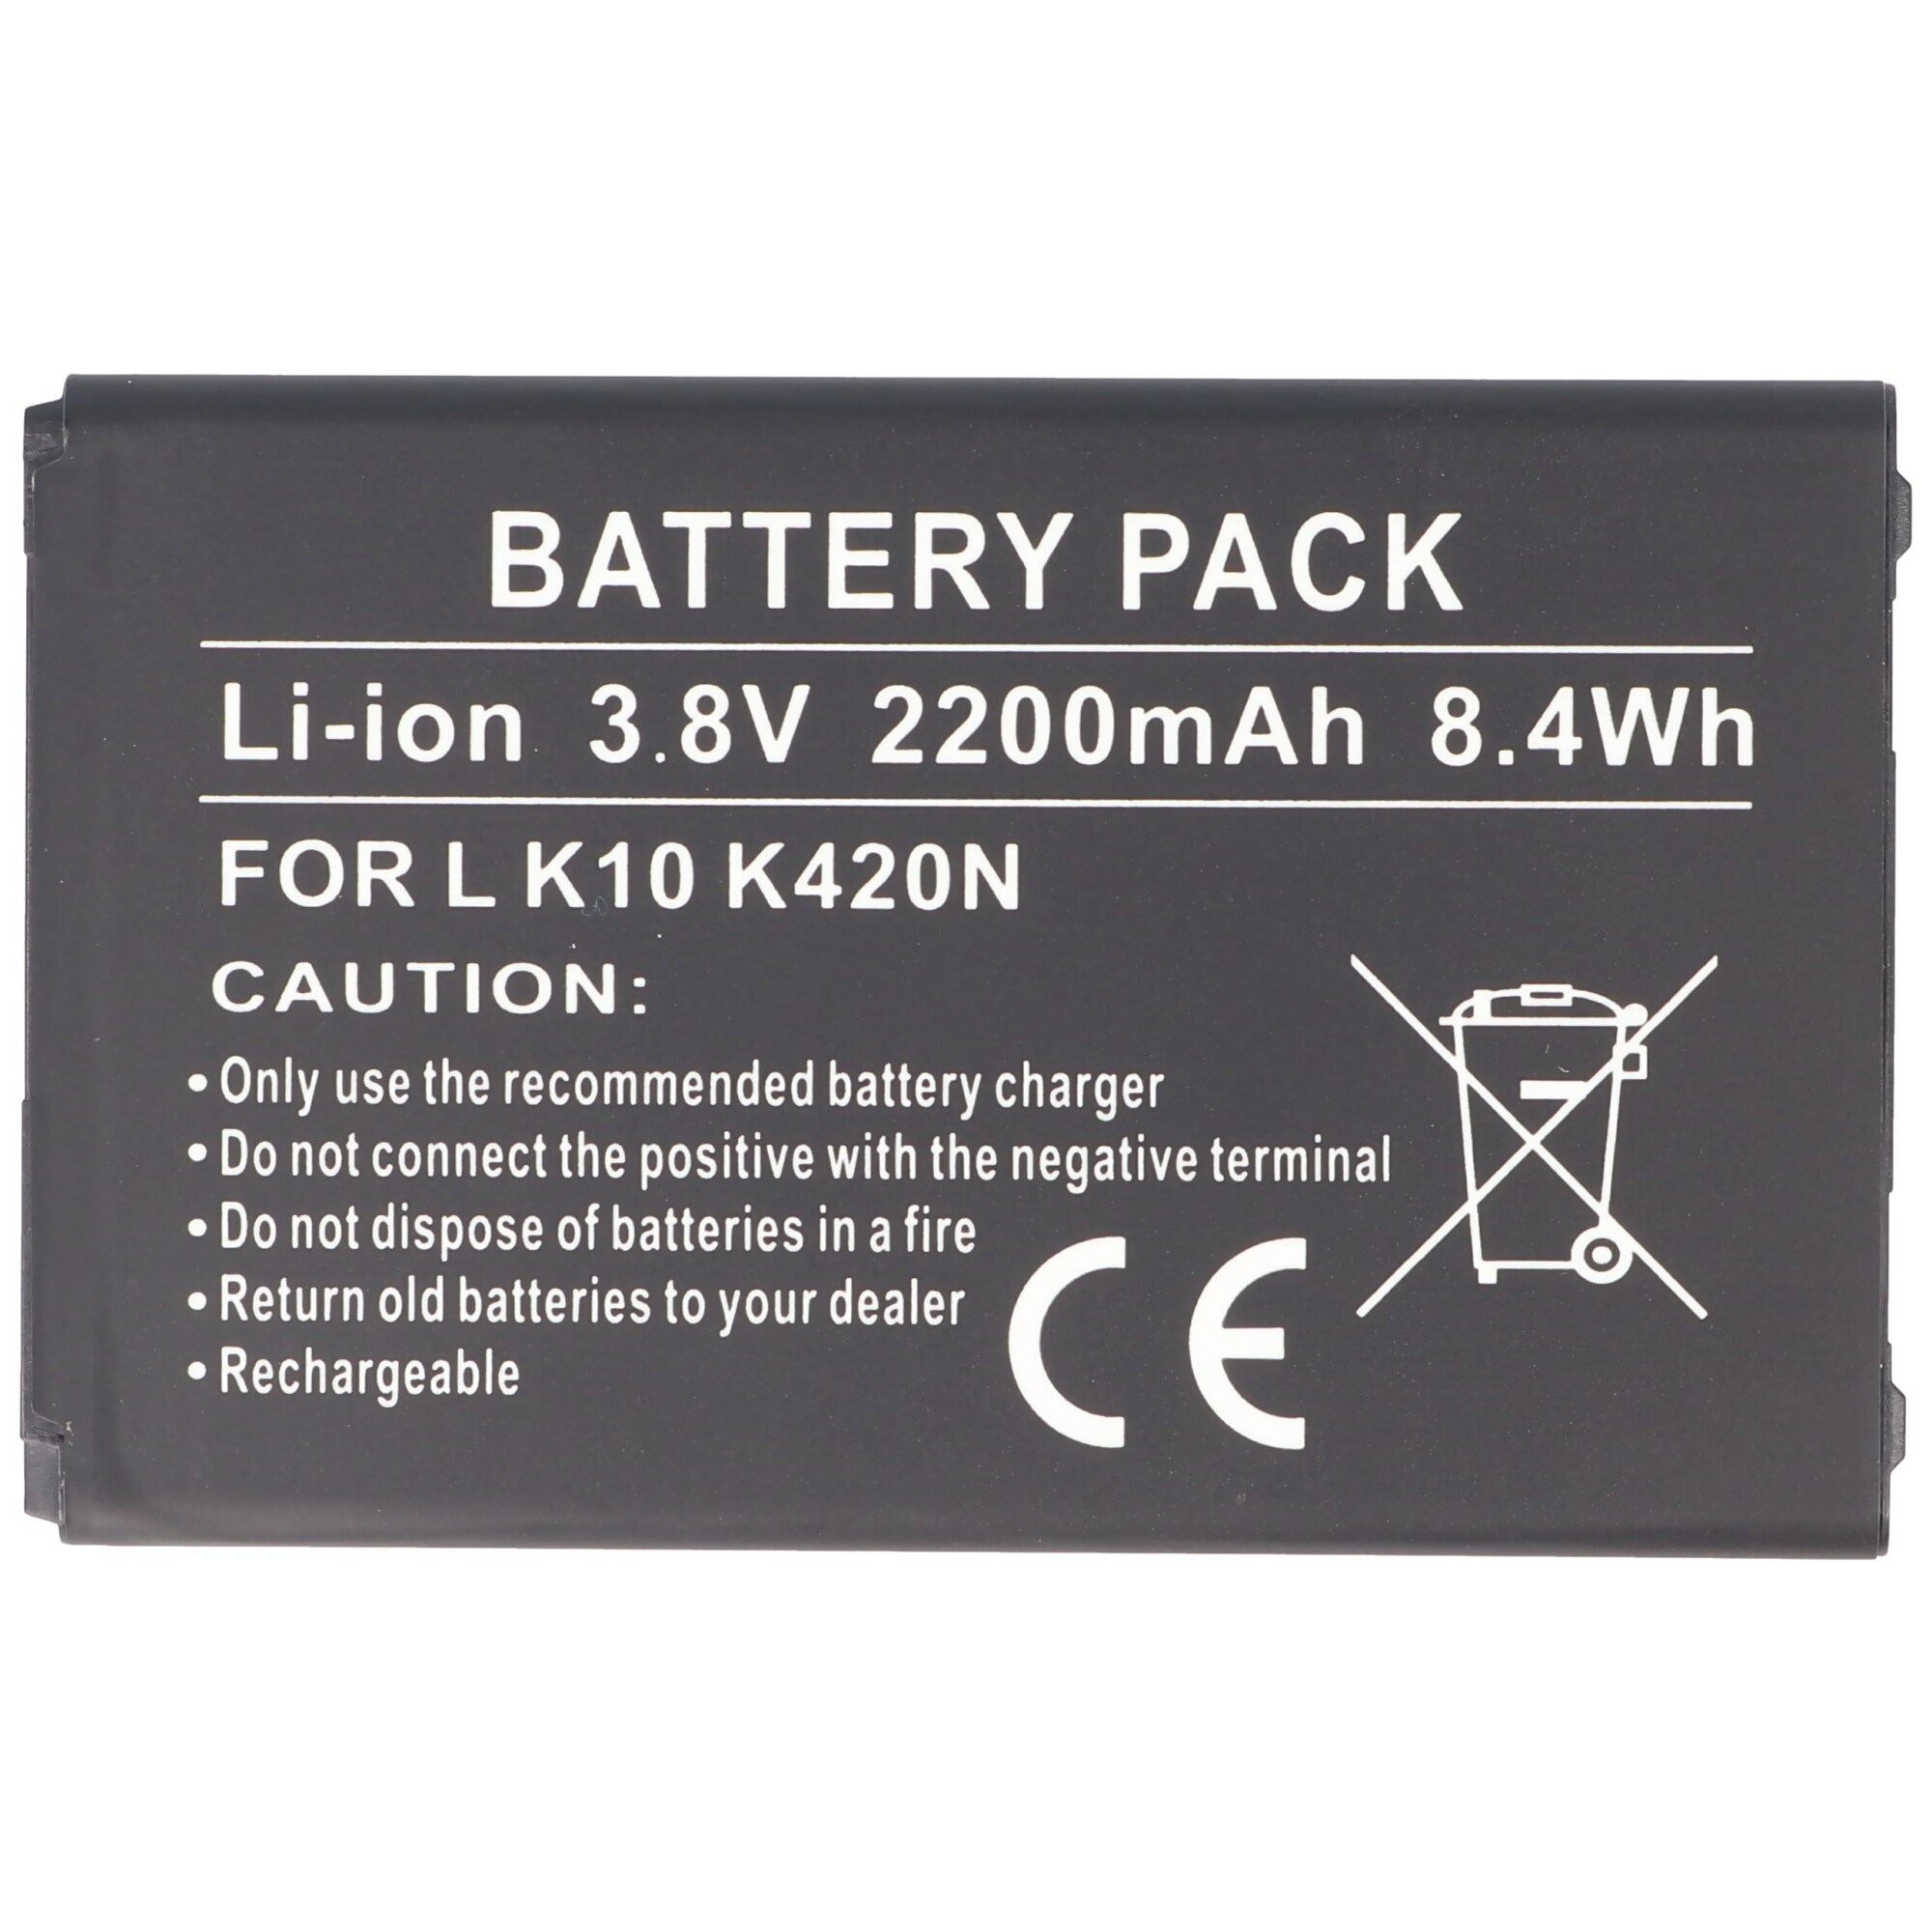 Pil LG K10 K420N, Li-ion, 3.8V, 2200mAh, 8.4Wh, IC çip dahil